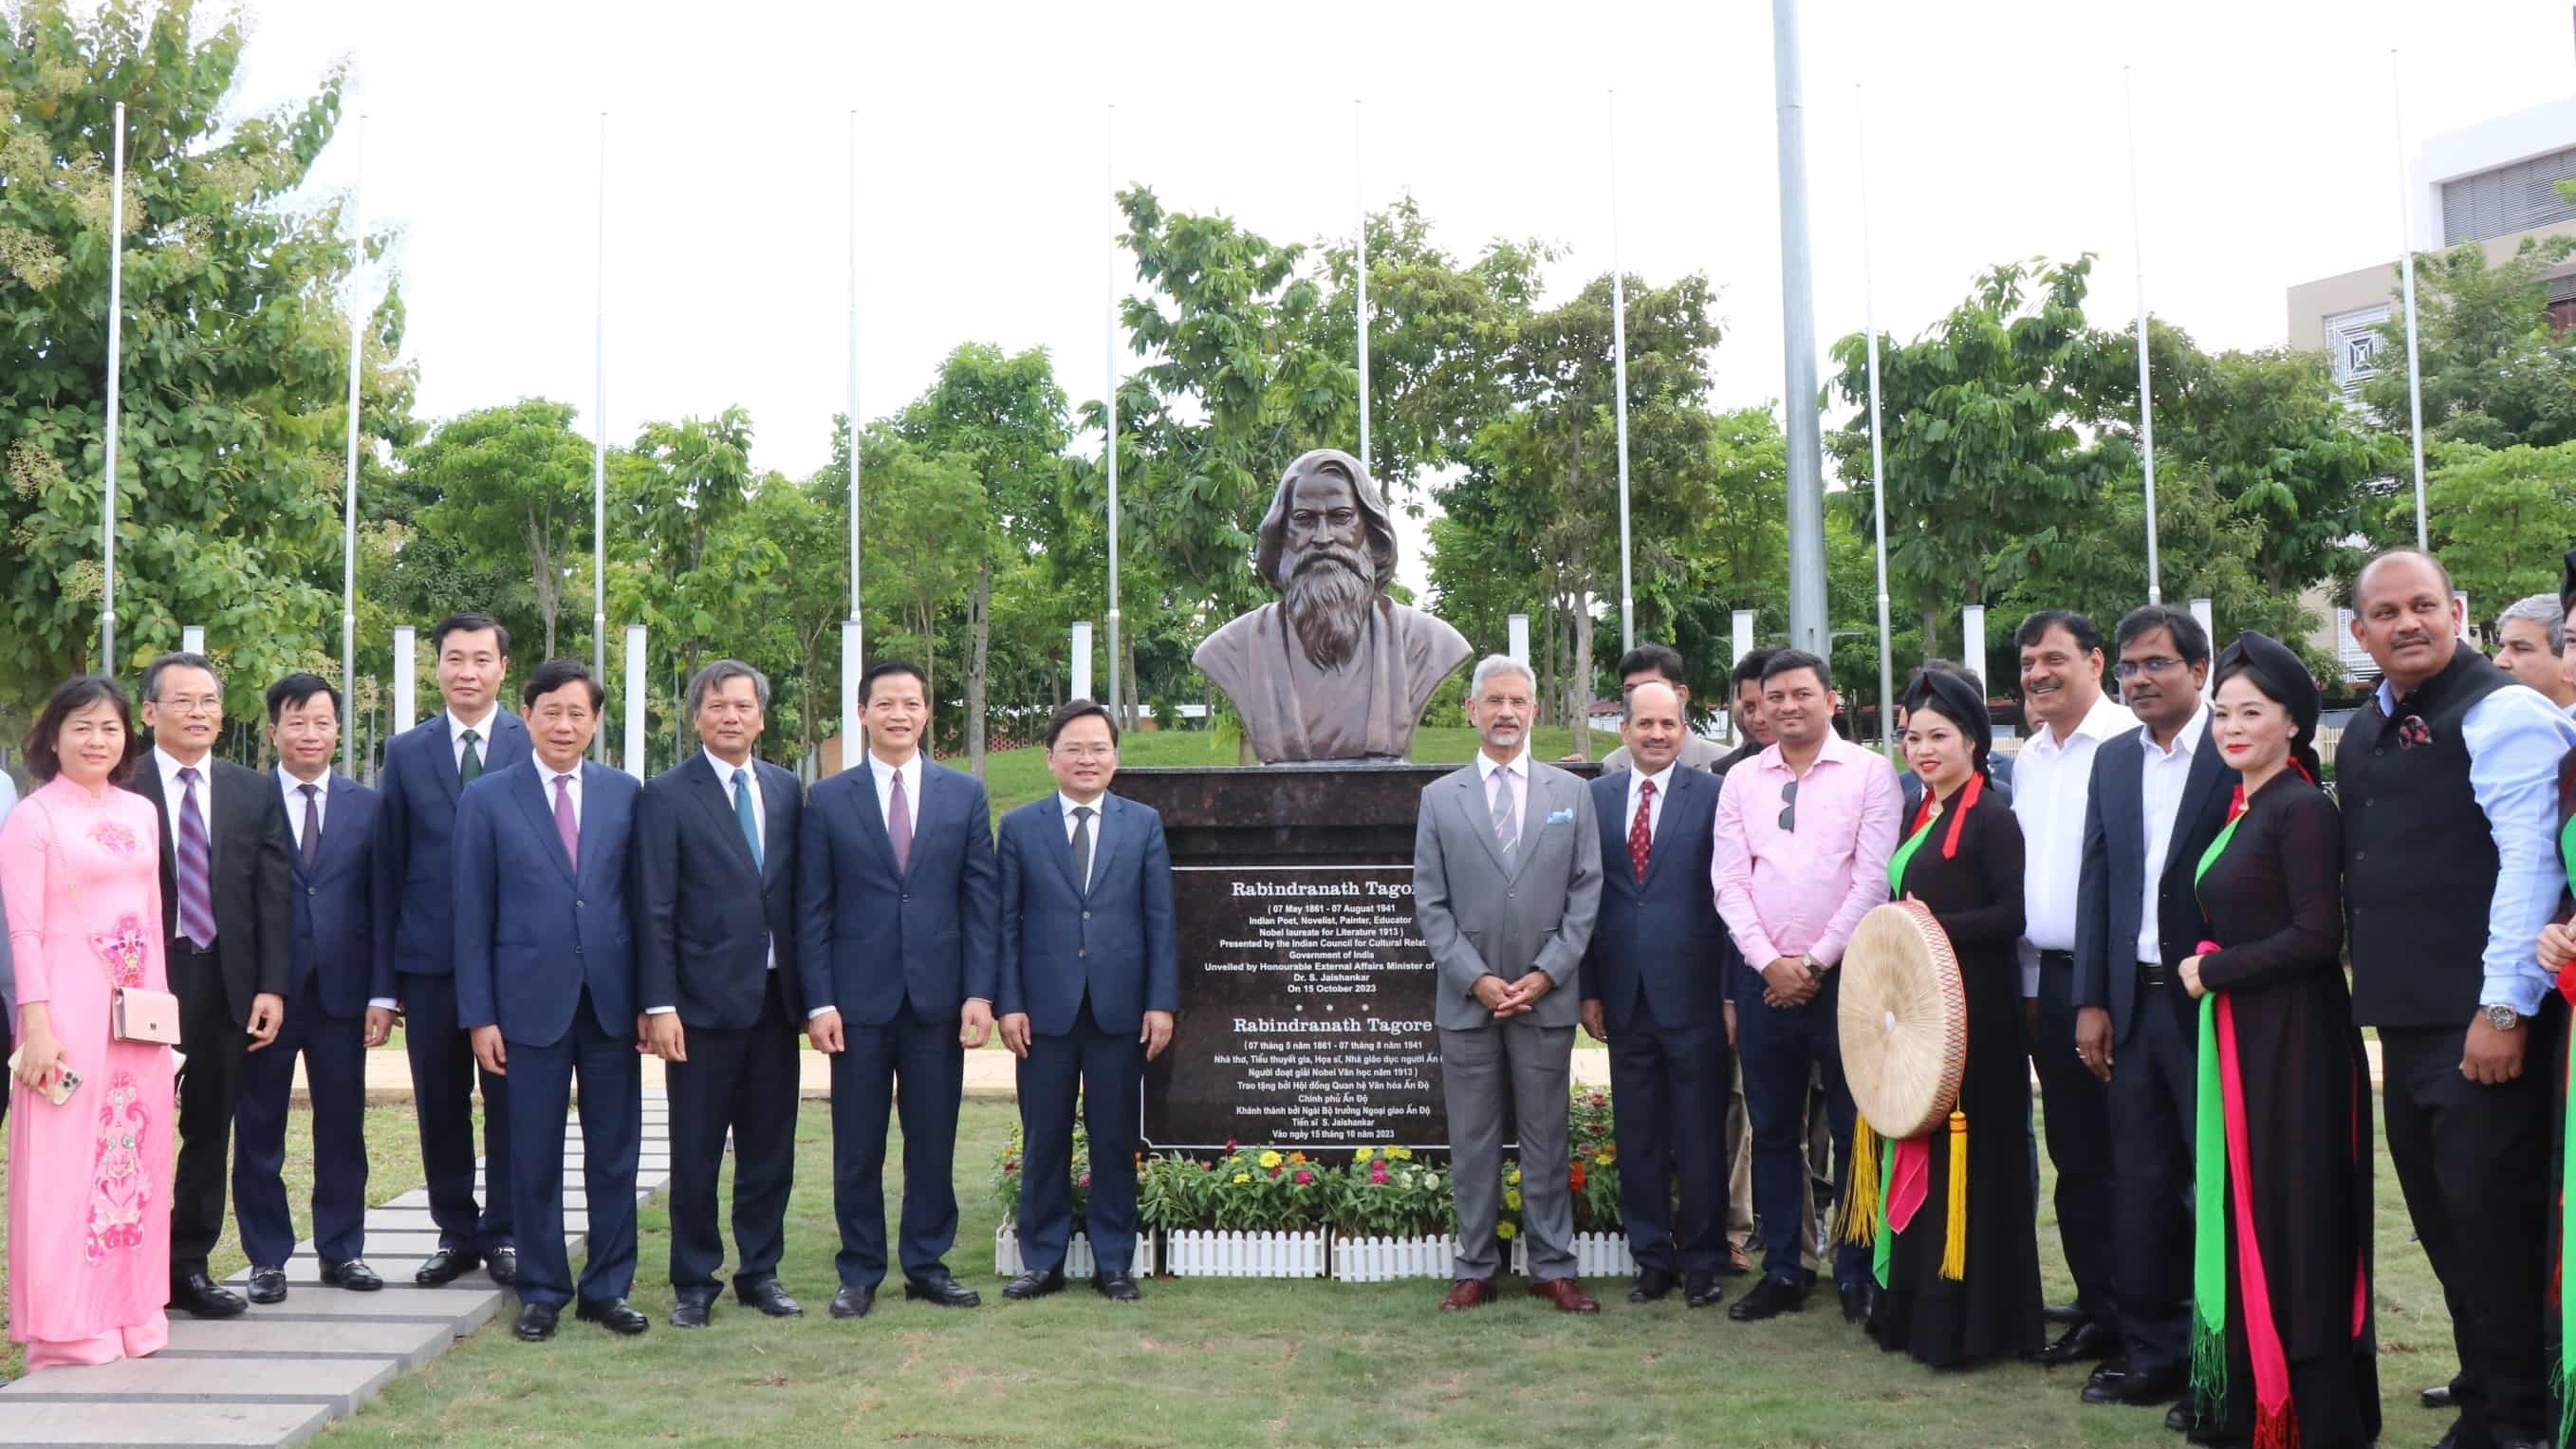 Khánh thành tượng danh nhân Ấn Độ Rabin Dranath Tagore tại Bắc Ninh